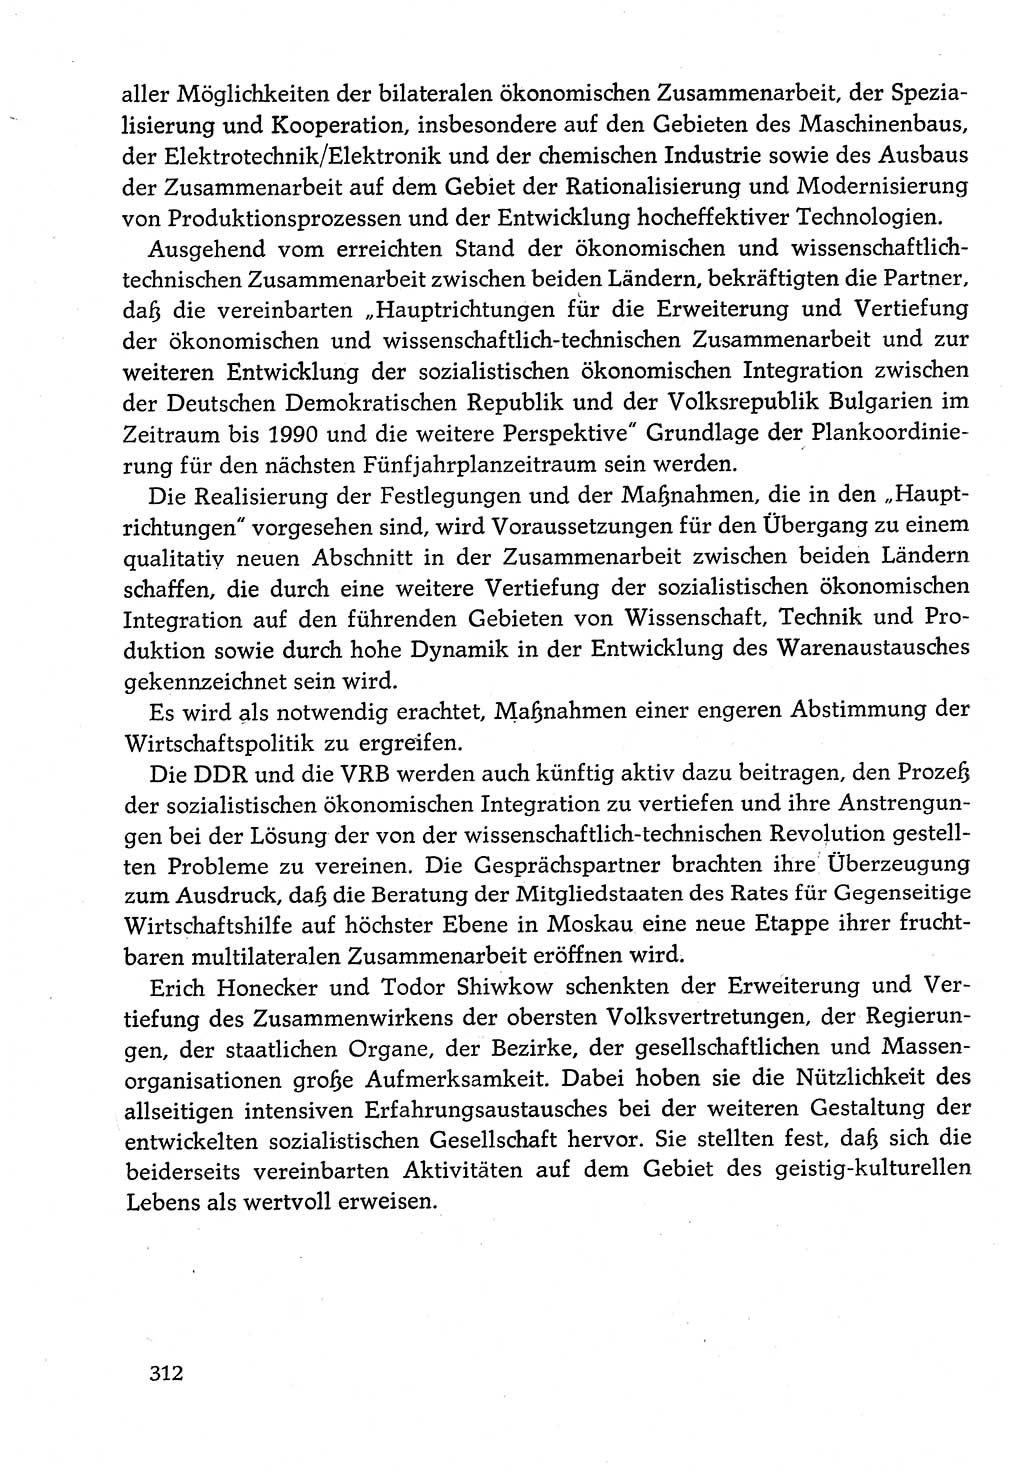 Dokumente der Sozialistischen Einheitspartei Deutschlands (SED) [Deutsche Demokratische Republik (DDR)] 1982-1983, Seite 312 (Dok. SED DDR 1982-1983, S. 312)